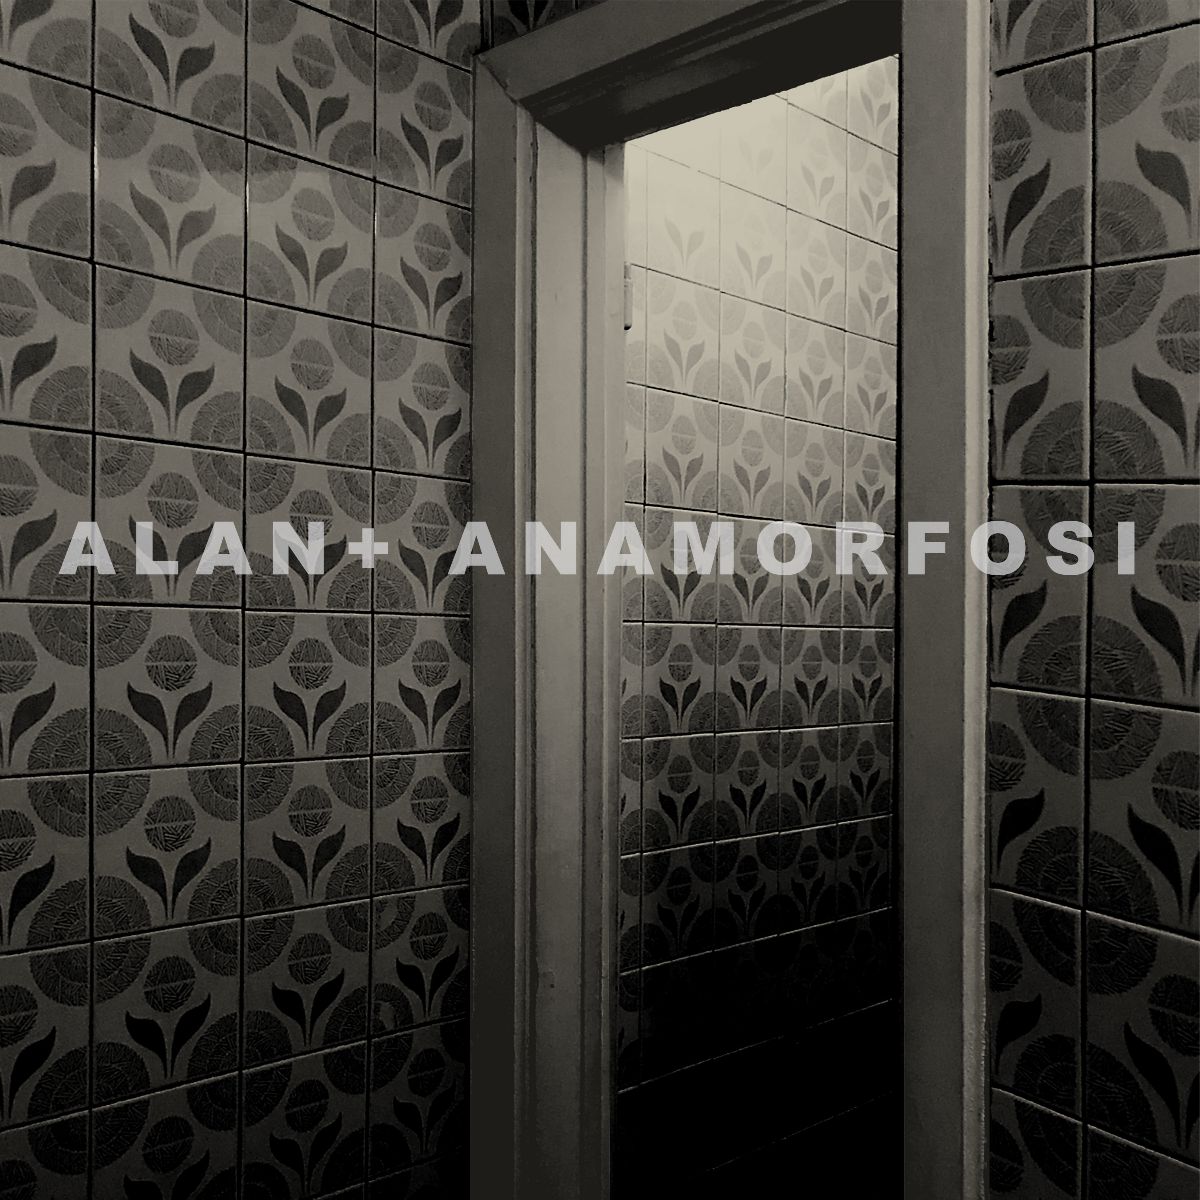 ALAN + – “Anamorfosi”